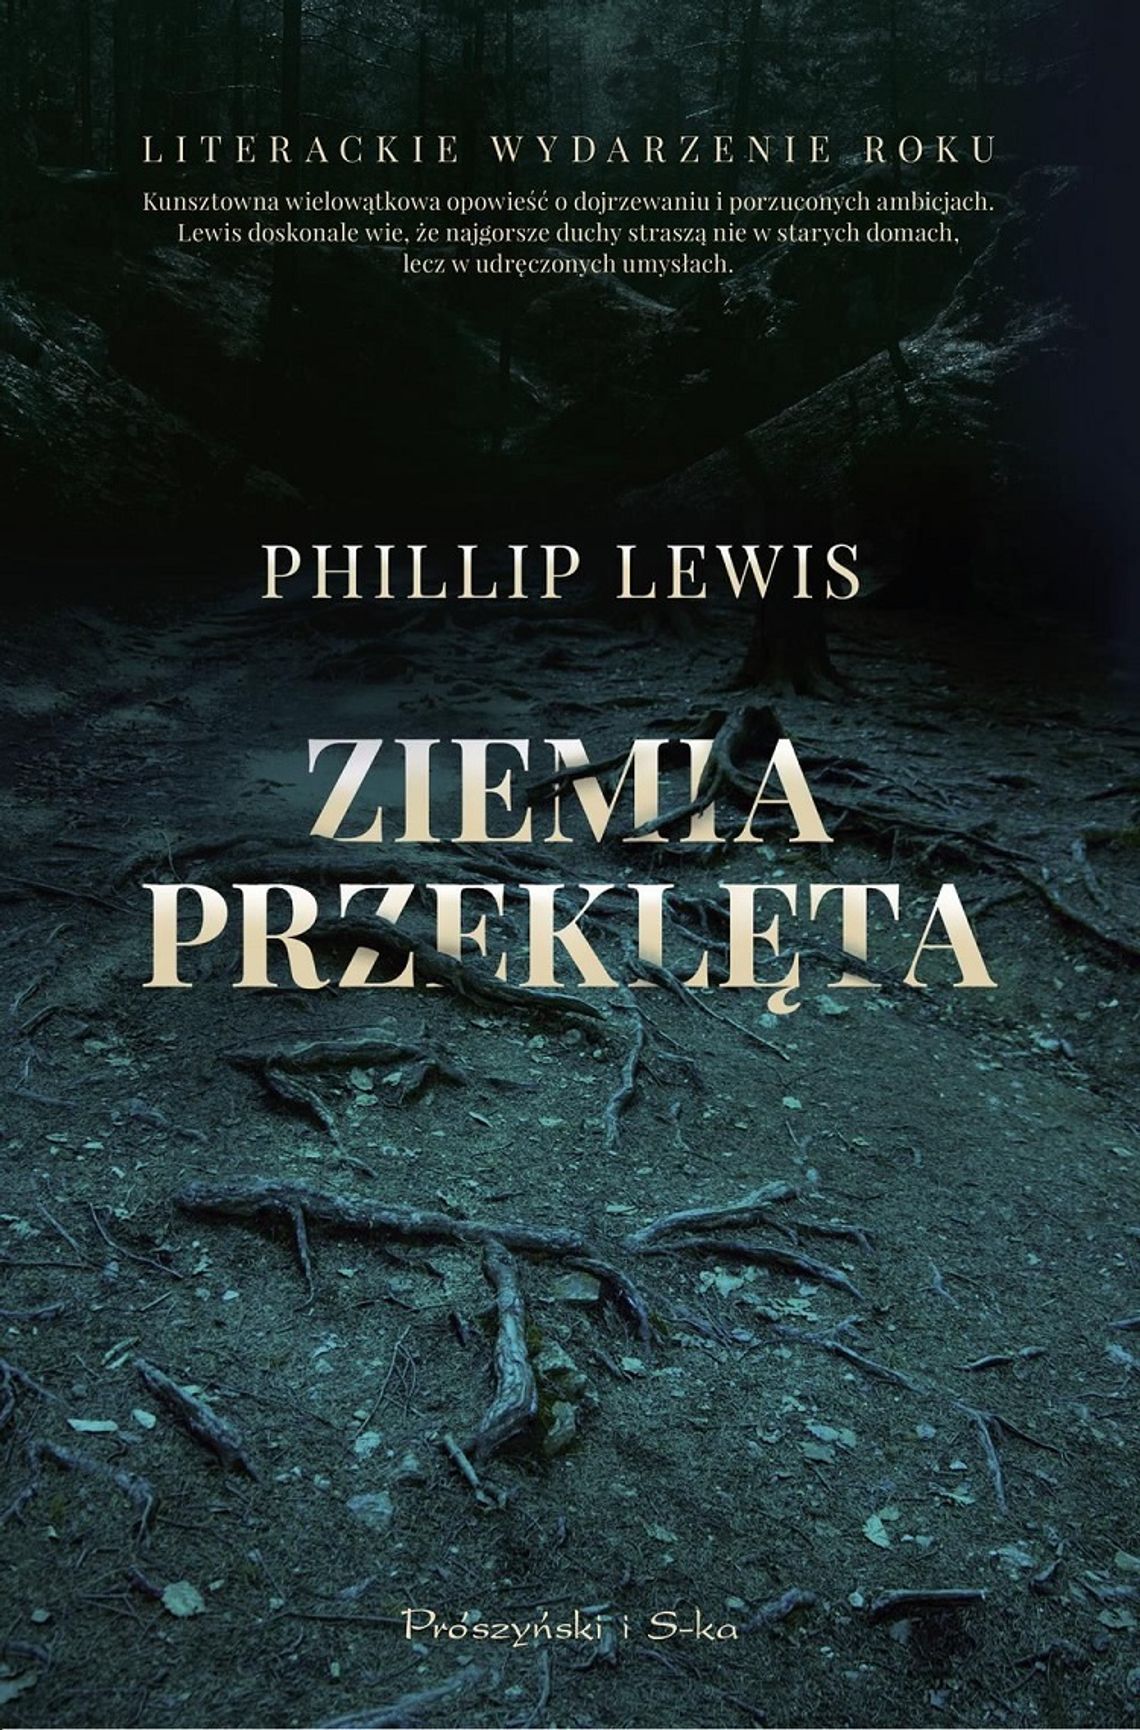 Phillip Lewis "Ziemia przeklęta"; wyd. Prószyński i S-ka